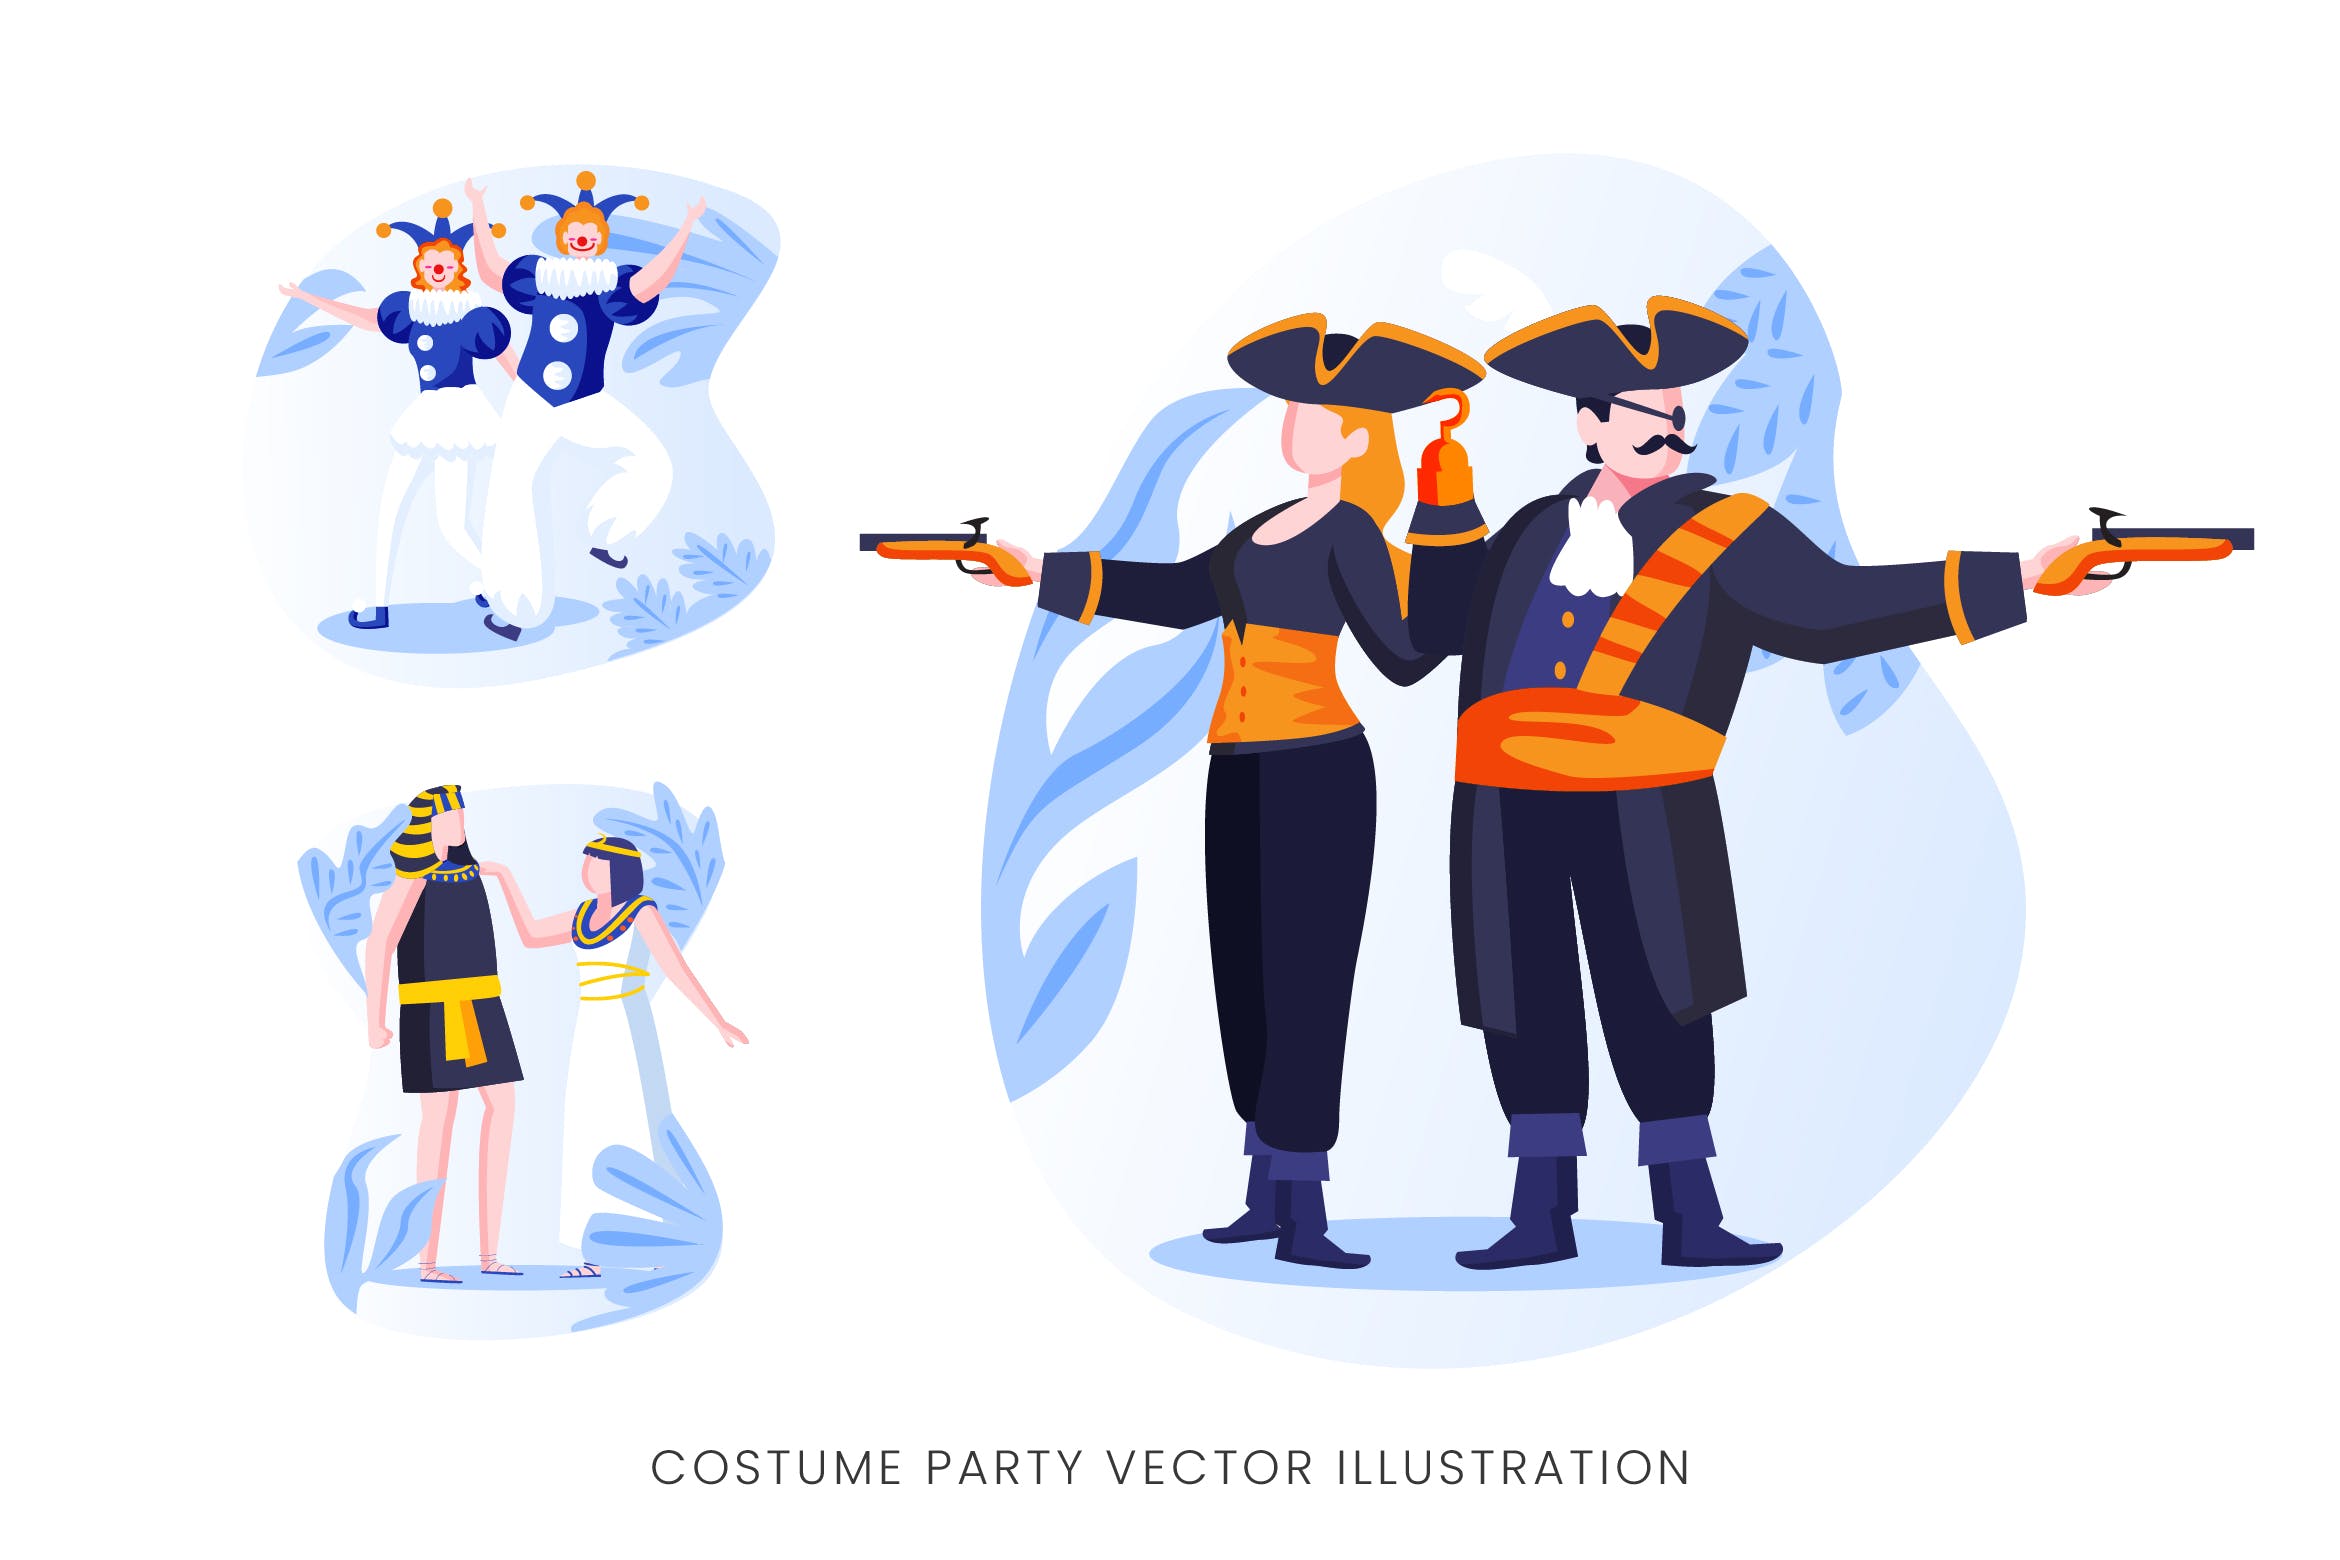 服装Cosplay派对人物形象矢量手绘第一素材精选设计素材 Costume Party Vector Character Set插图